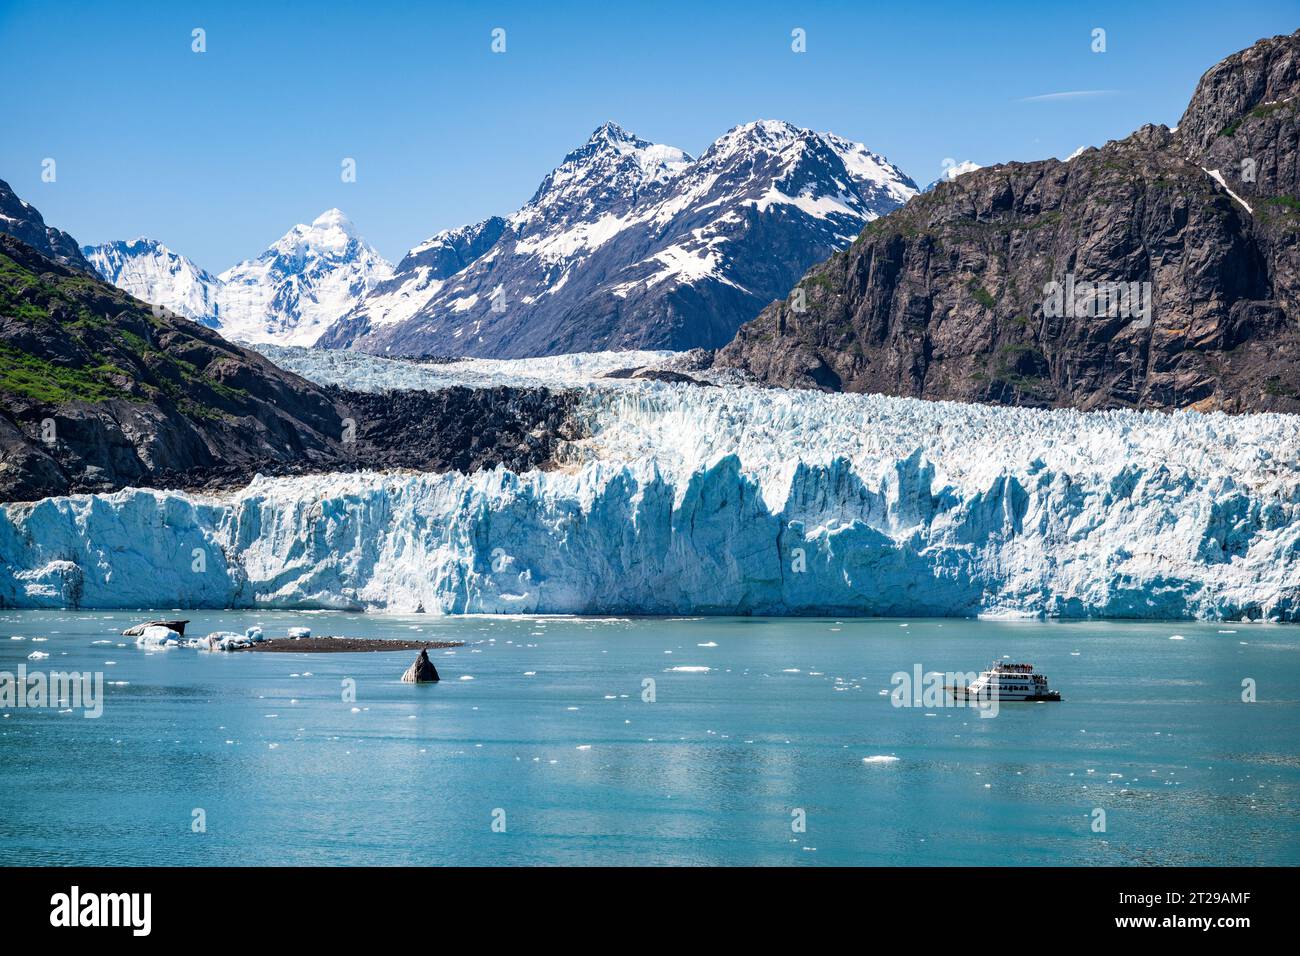 Il ghiacciaio Margerie è un ghiacciaio con acqua di marea lungo circa 21 km situato a Glacier Bay, Alaska, Stati Uniti, all'interno del Glacier Bay National Park and Preserve. Foto Stock